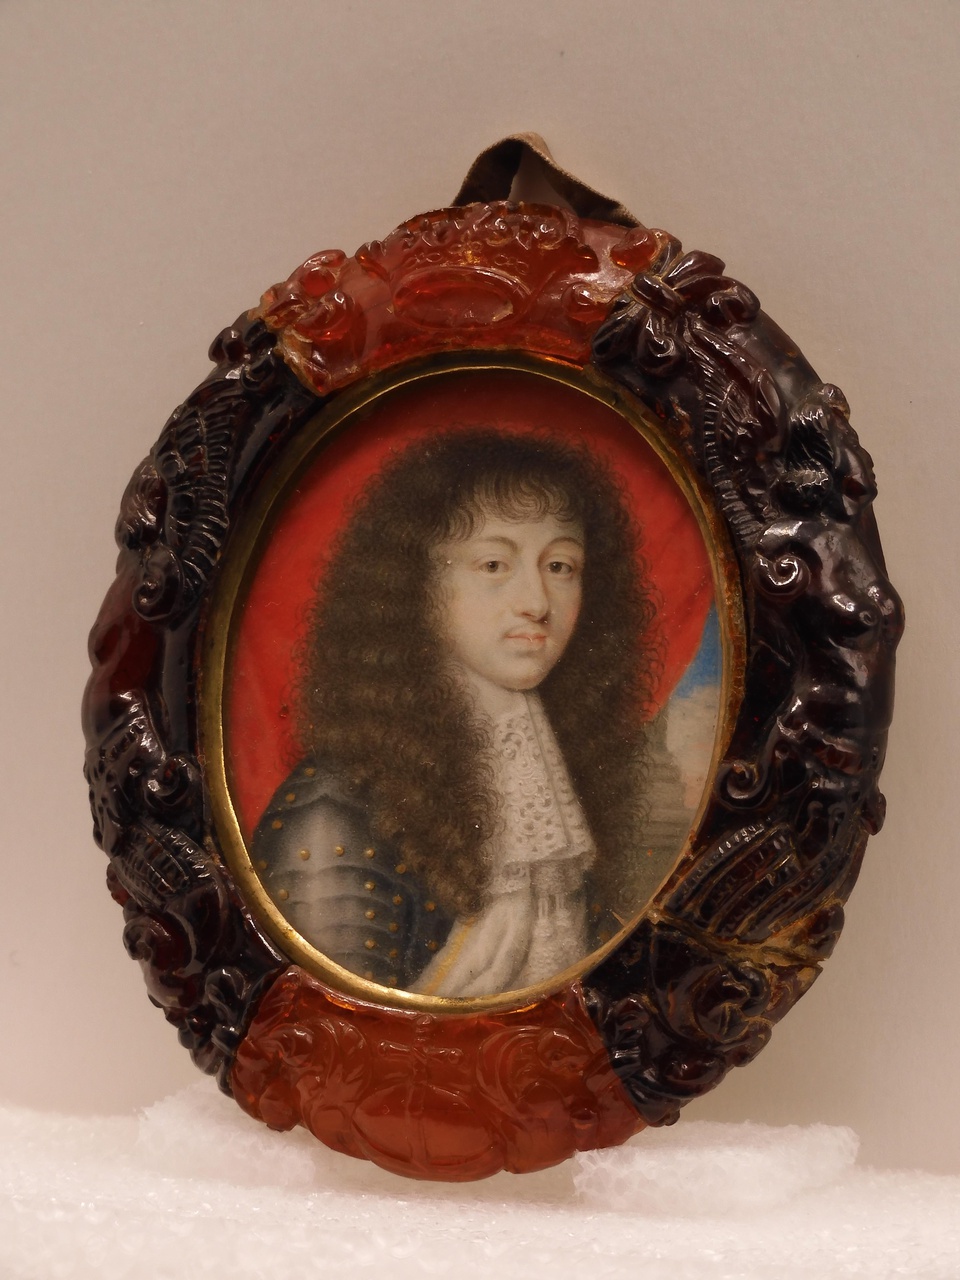 Portret van Lodewijk XIV van Frankrijk (1638-1715)